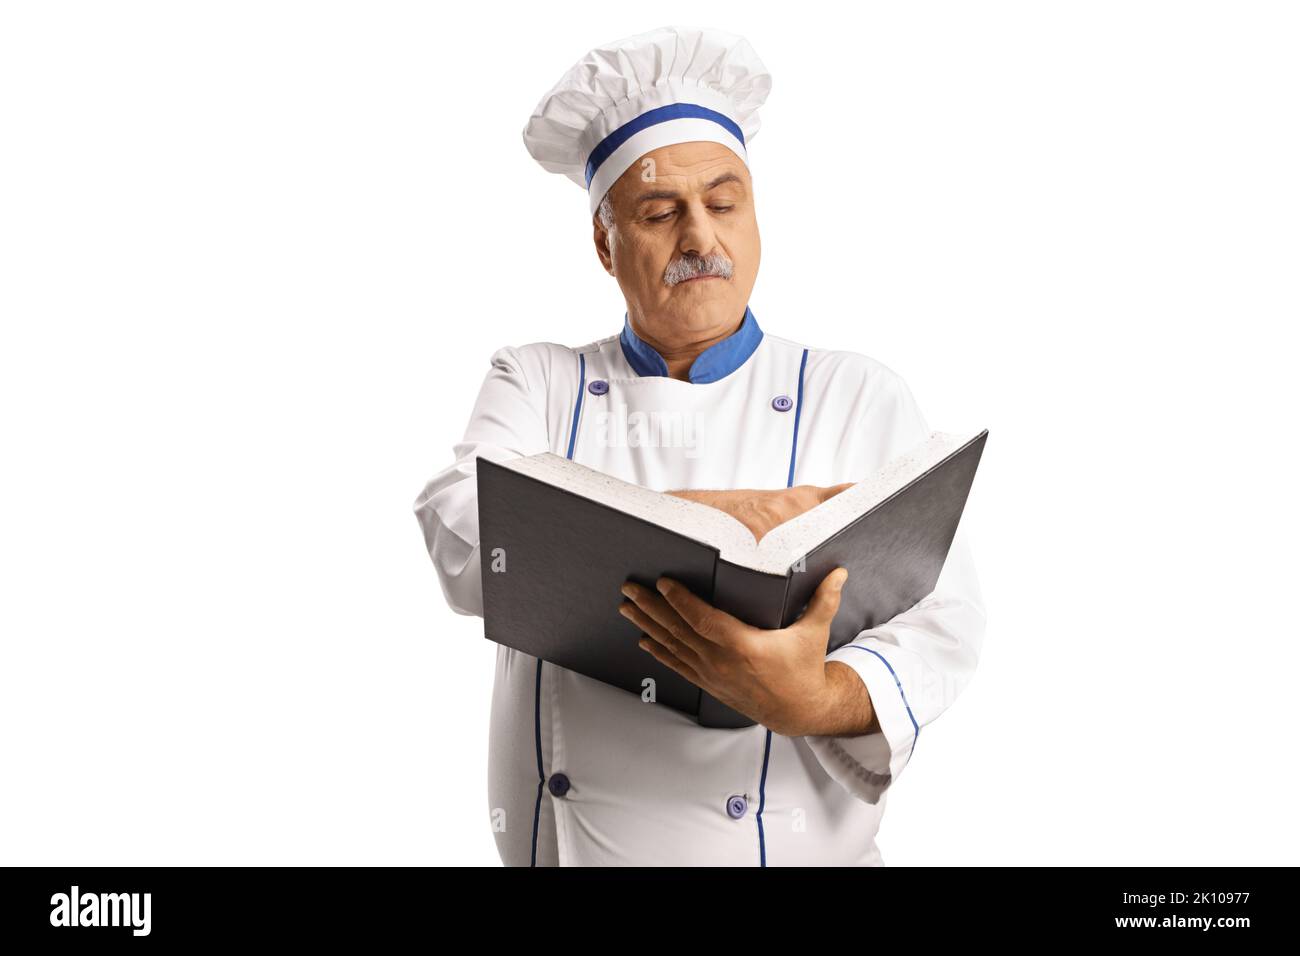 Un chef de cuisine homme mature lisant un livre de cuisine isolé sur fond blanc Banque D'Images